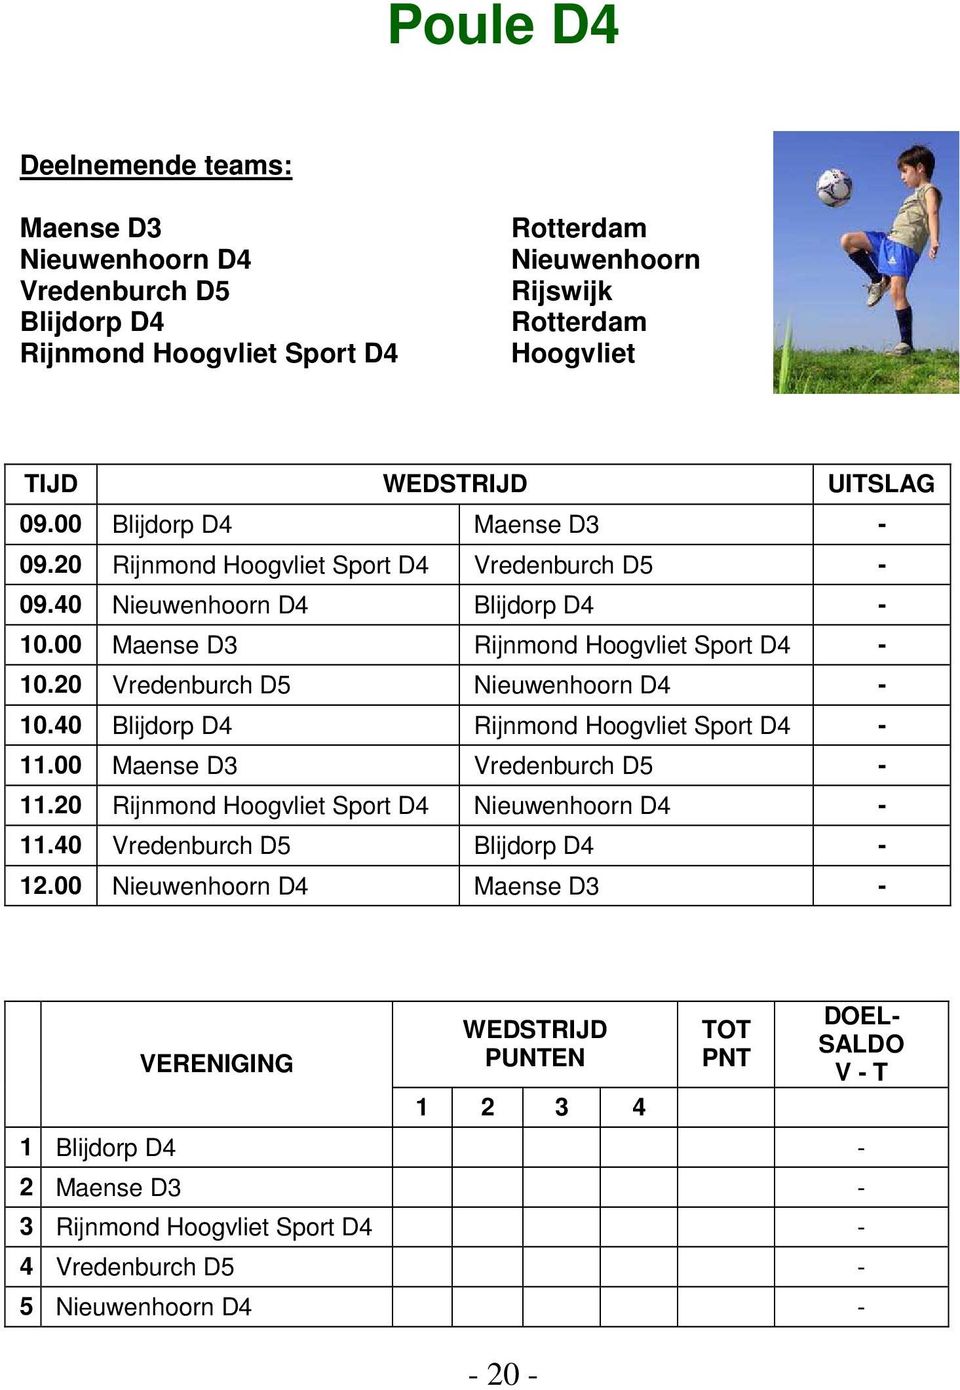 20 Vredenburch D5 Nieuwenhoorn D4-10.40 Blijdorp D4 Rijnmond Sport D4-11.00 Maense D3 Vredenburch D5-11.20 Rijnmond Sport D4 Nieuwenhoorn D4-11.